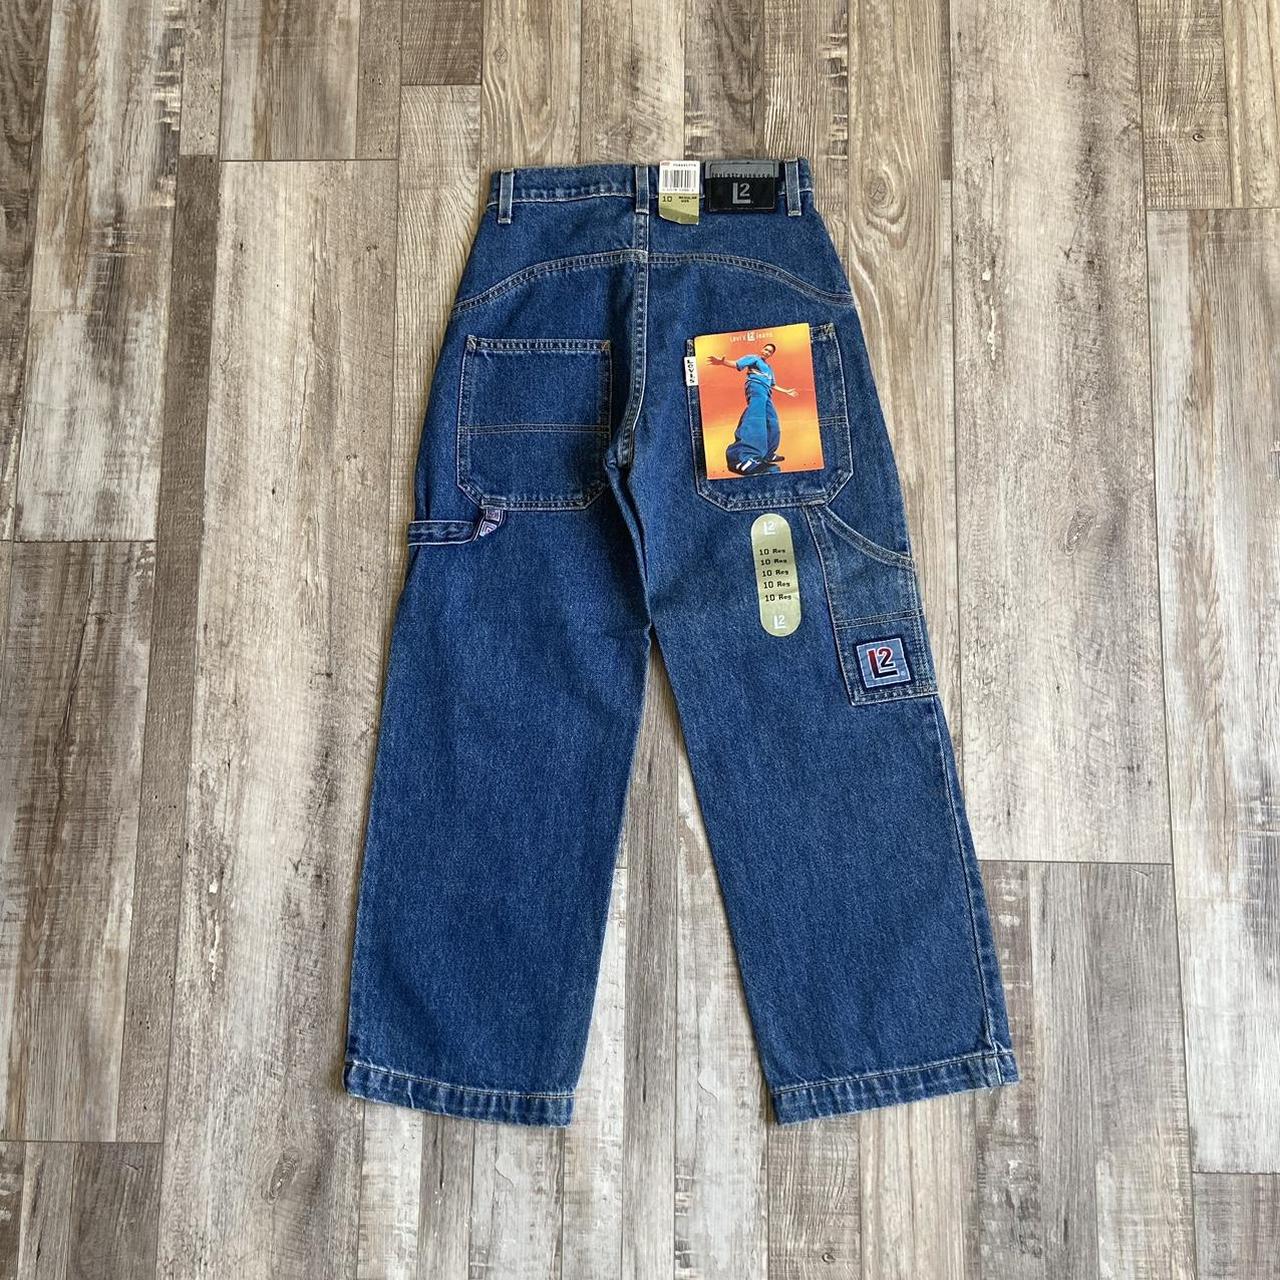 Junior Jeans – DENNC BOUTIQUE LLC